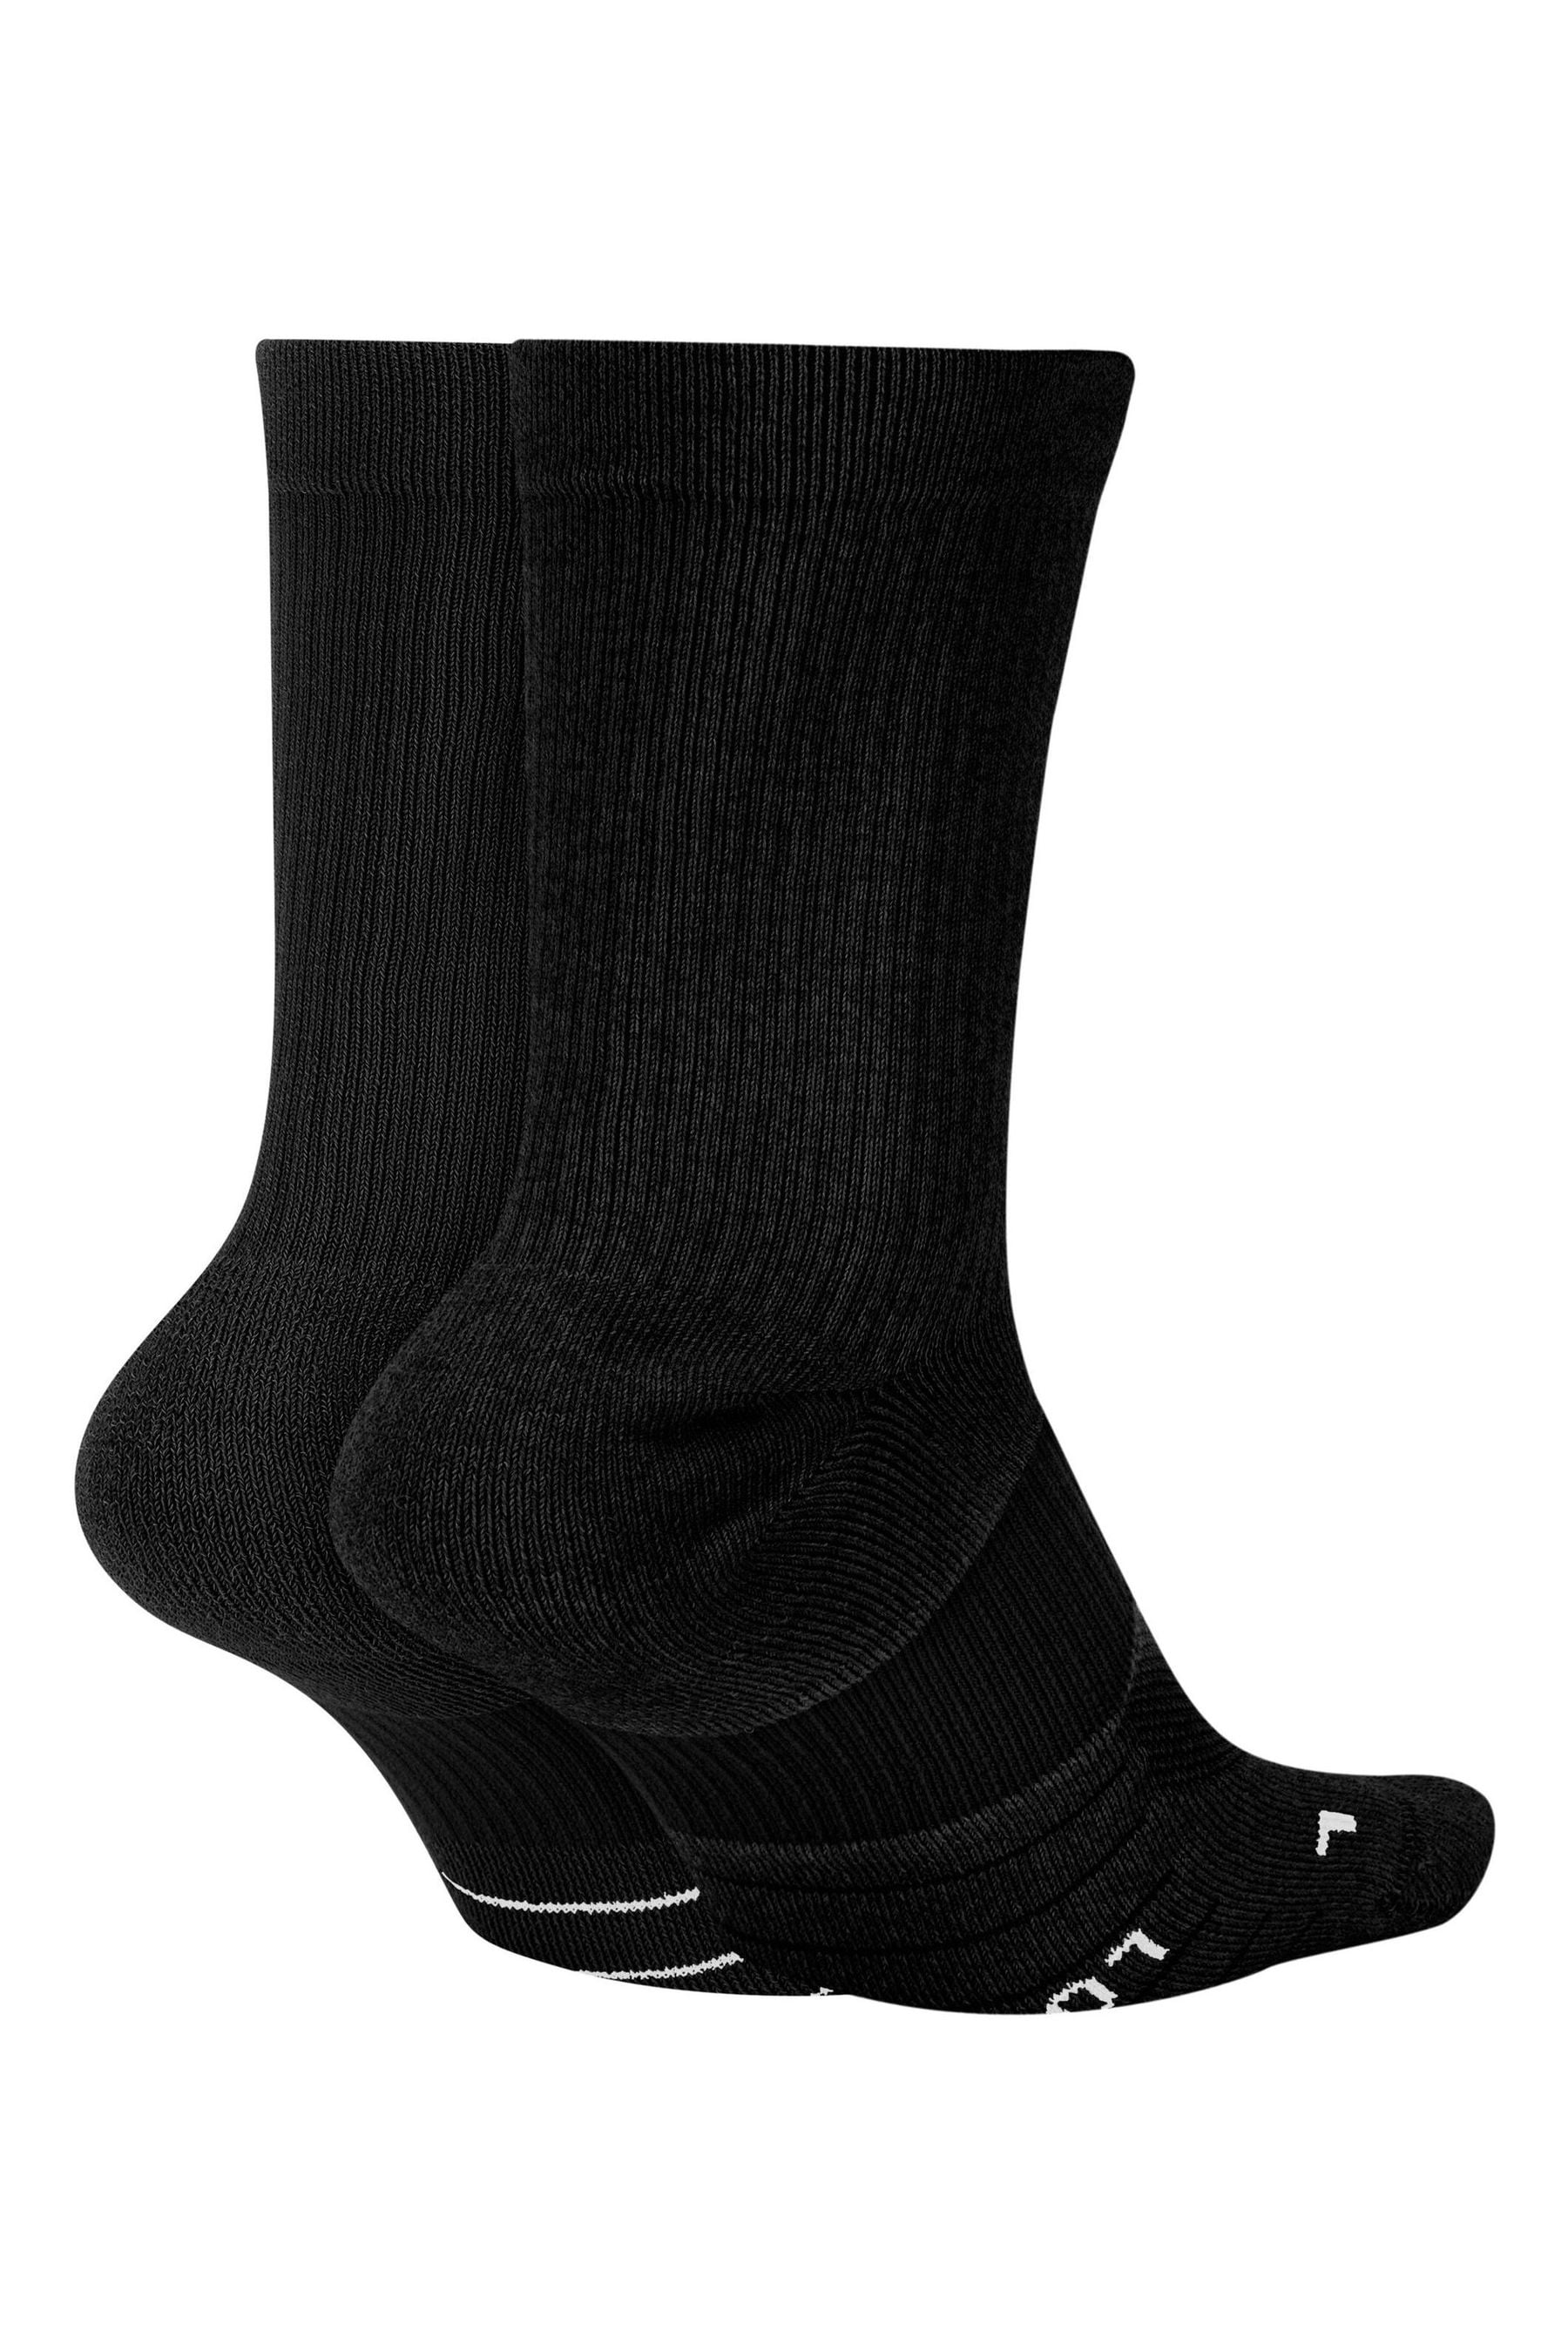 Buy Nike Black/White Multiplier Crew Socks 2 Pack from the Next UK ...